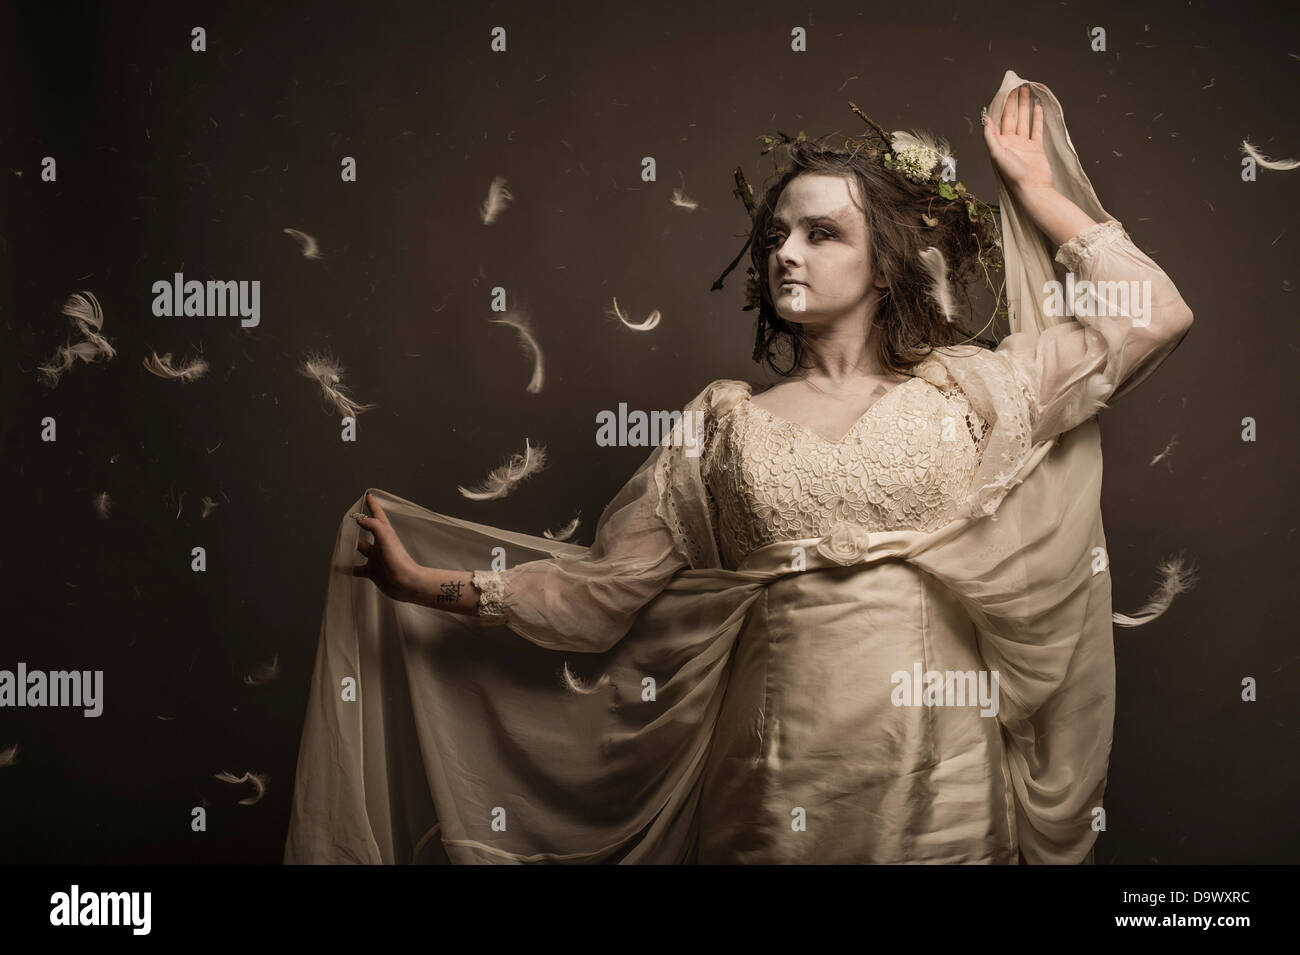 Una fantasia makeover sessione fotografica - donna ragazza vestita come pallido bosco spettrale creatura Spirito Foto Stock